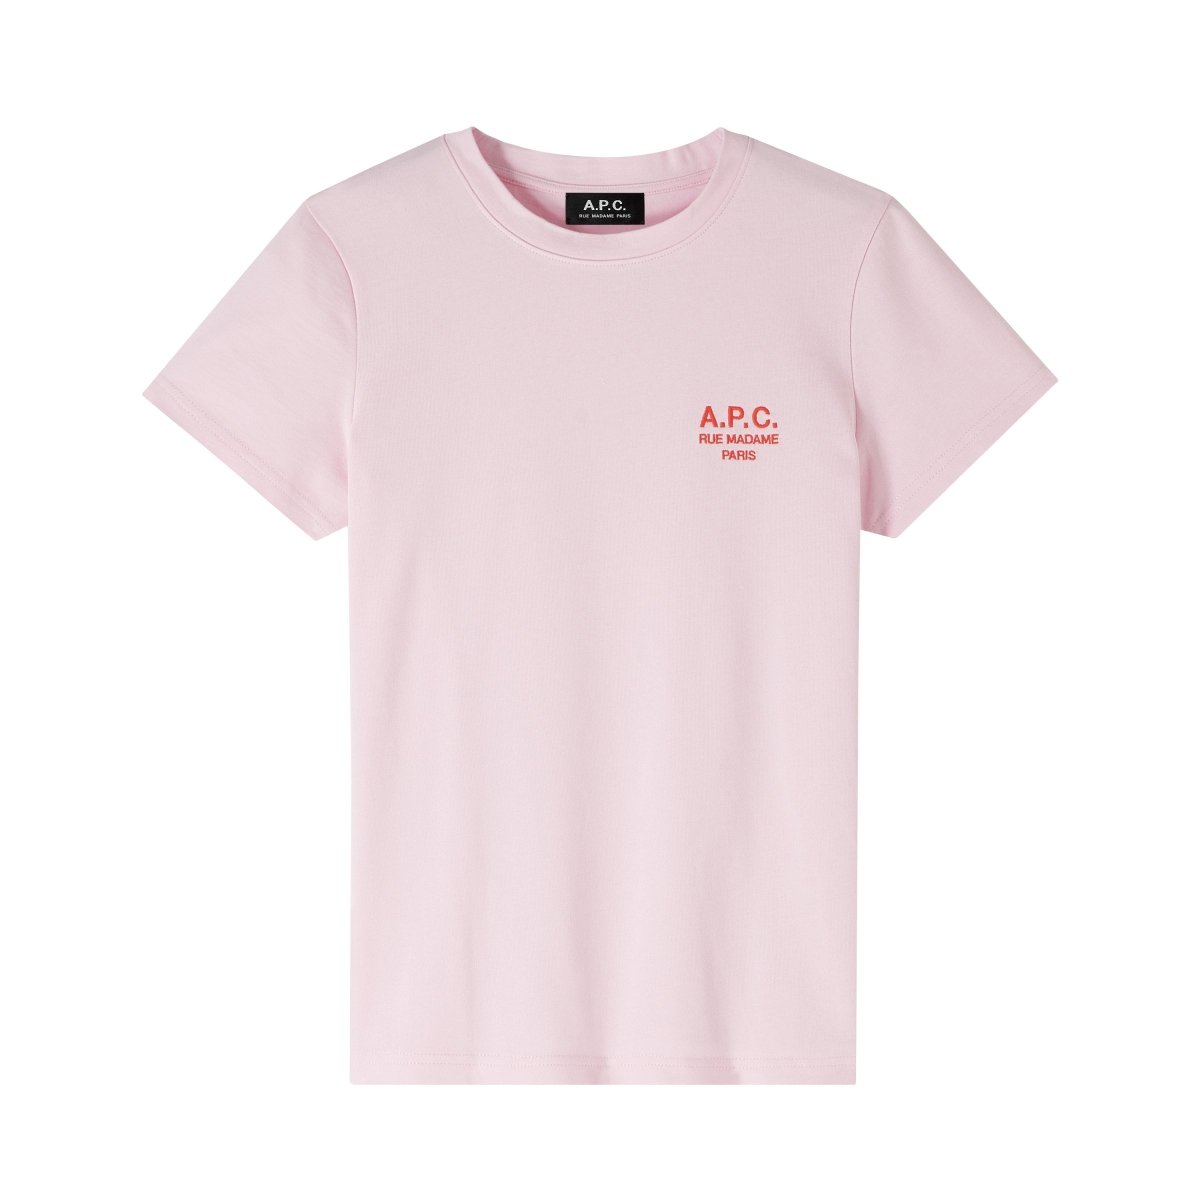 APC t-shirt denise ROSE - KYOTO - APC women